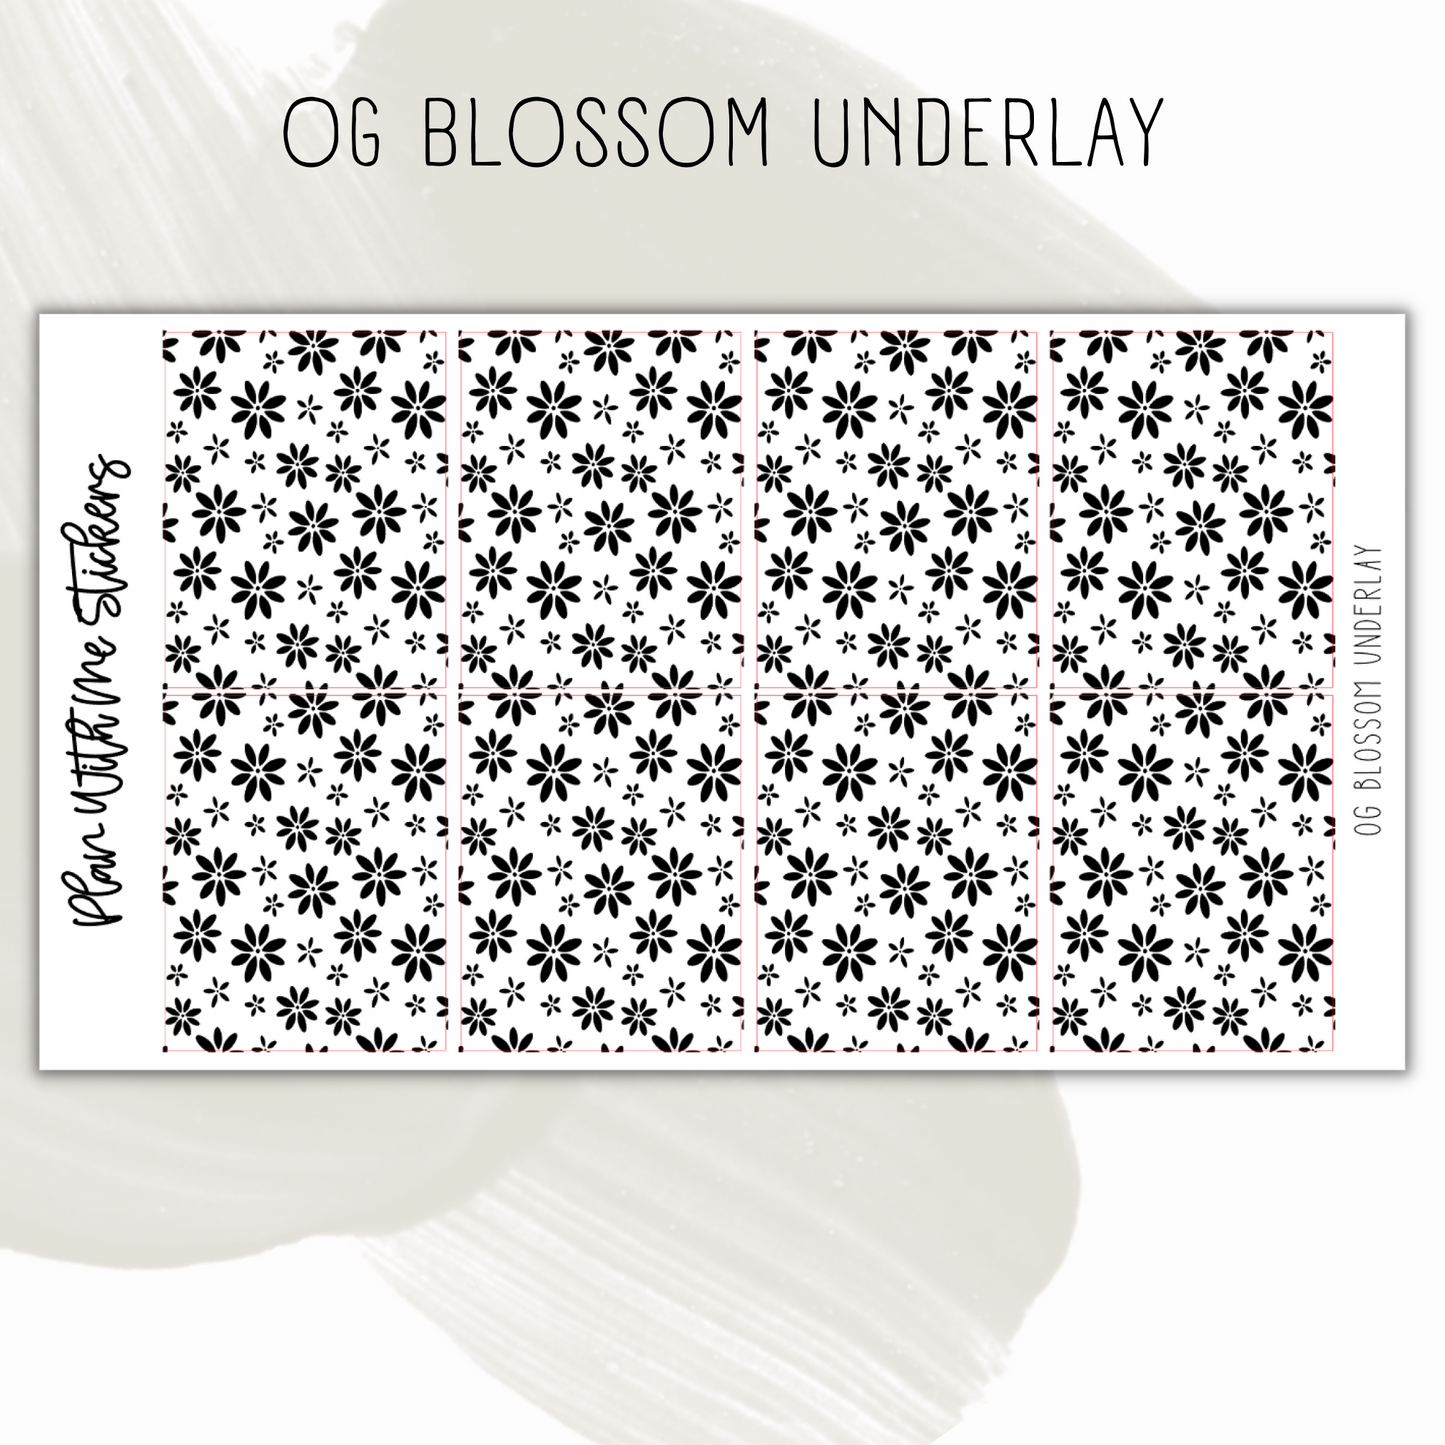 OG Blossom Underlay